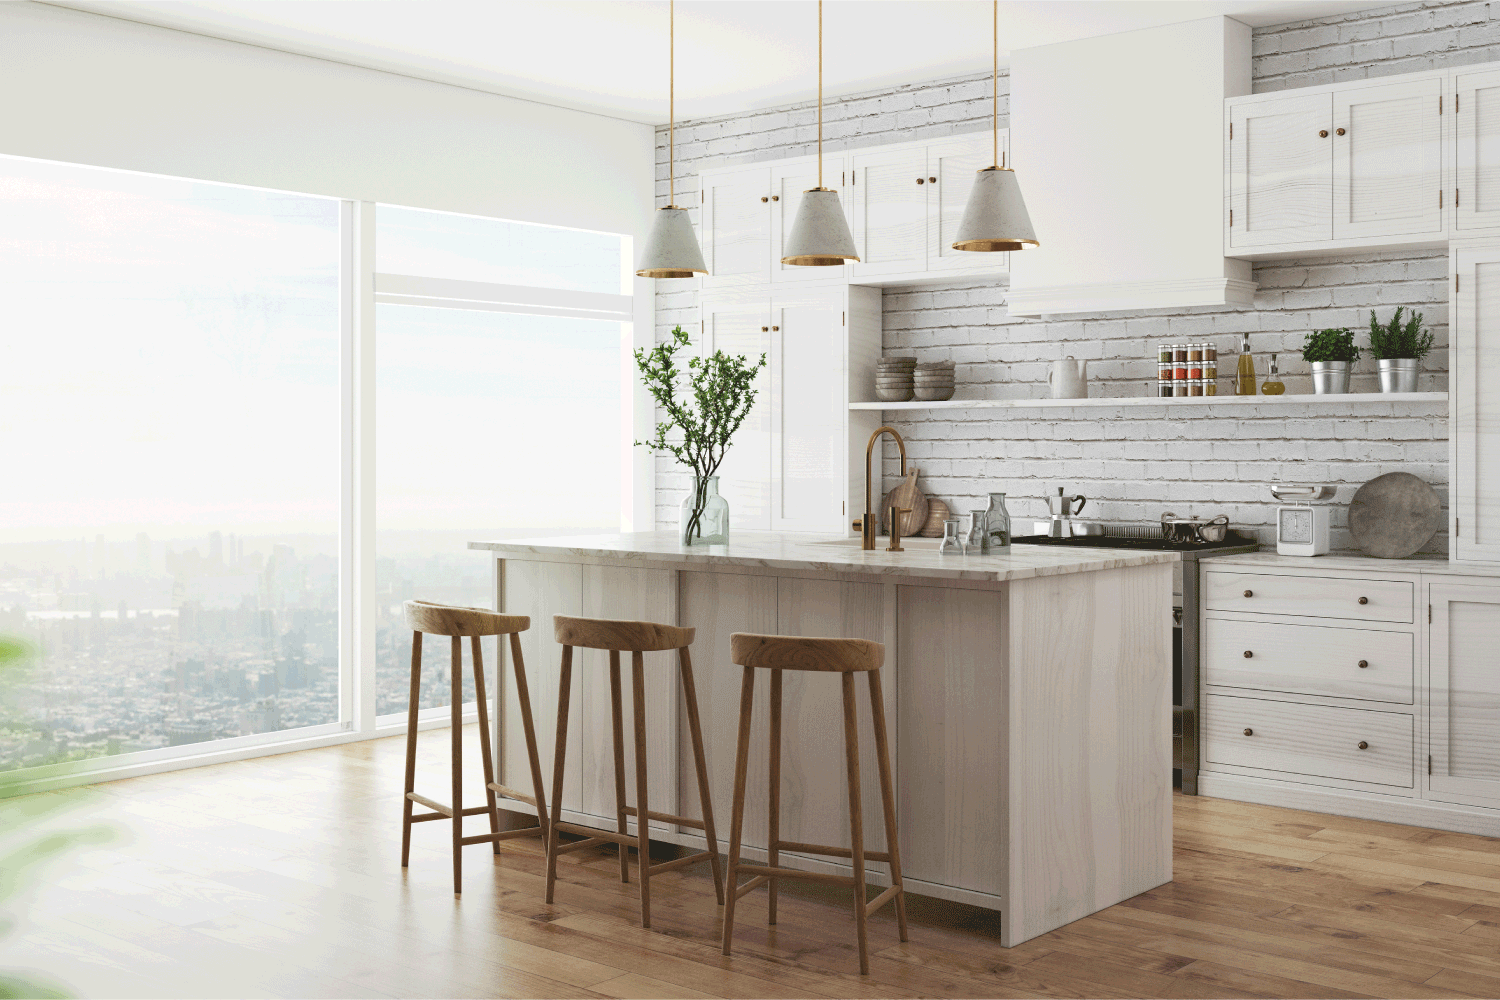 west coast inspired light wood interior kitchen